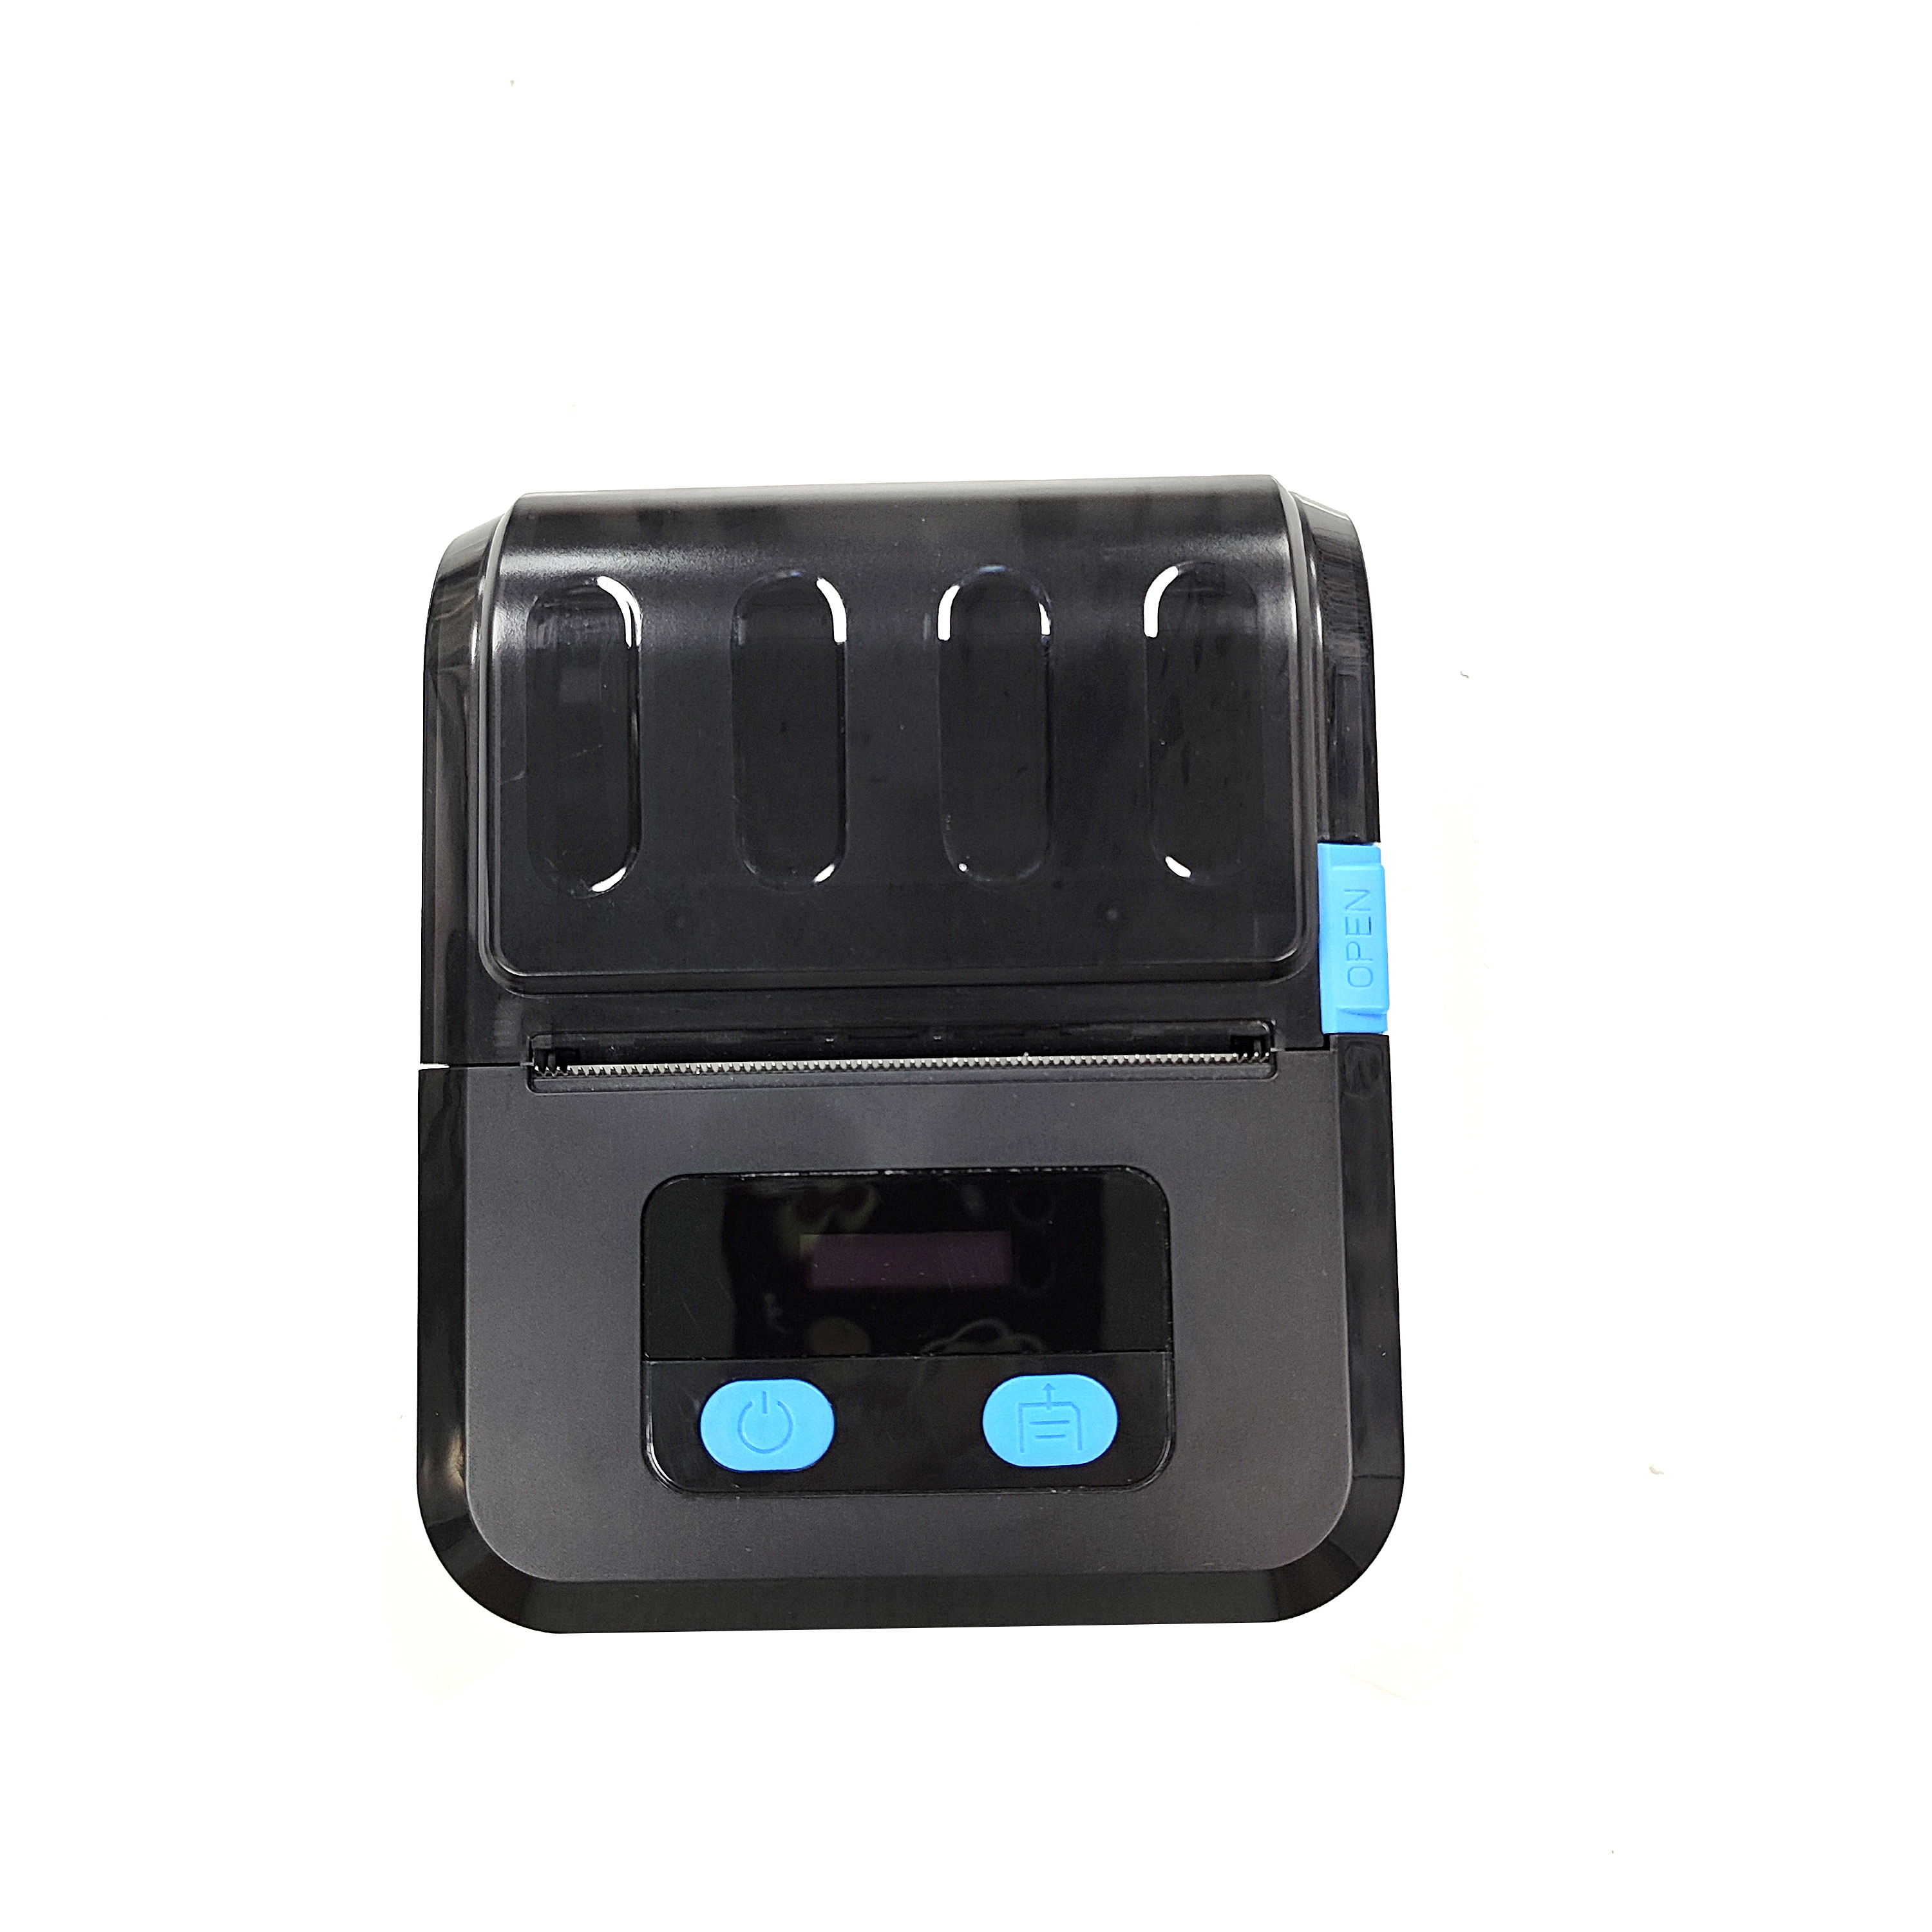 (OCBP-M89) zwarte gratis software draagbare draadloze bluetooth usb barcode miniprinter met een diameter van 50 mm